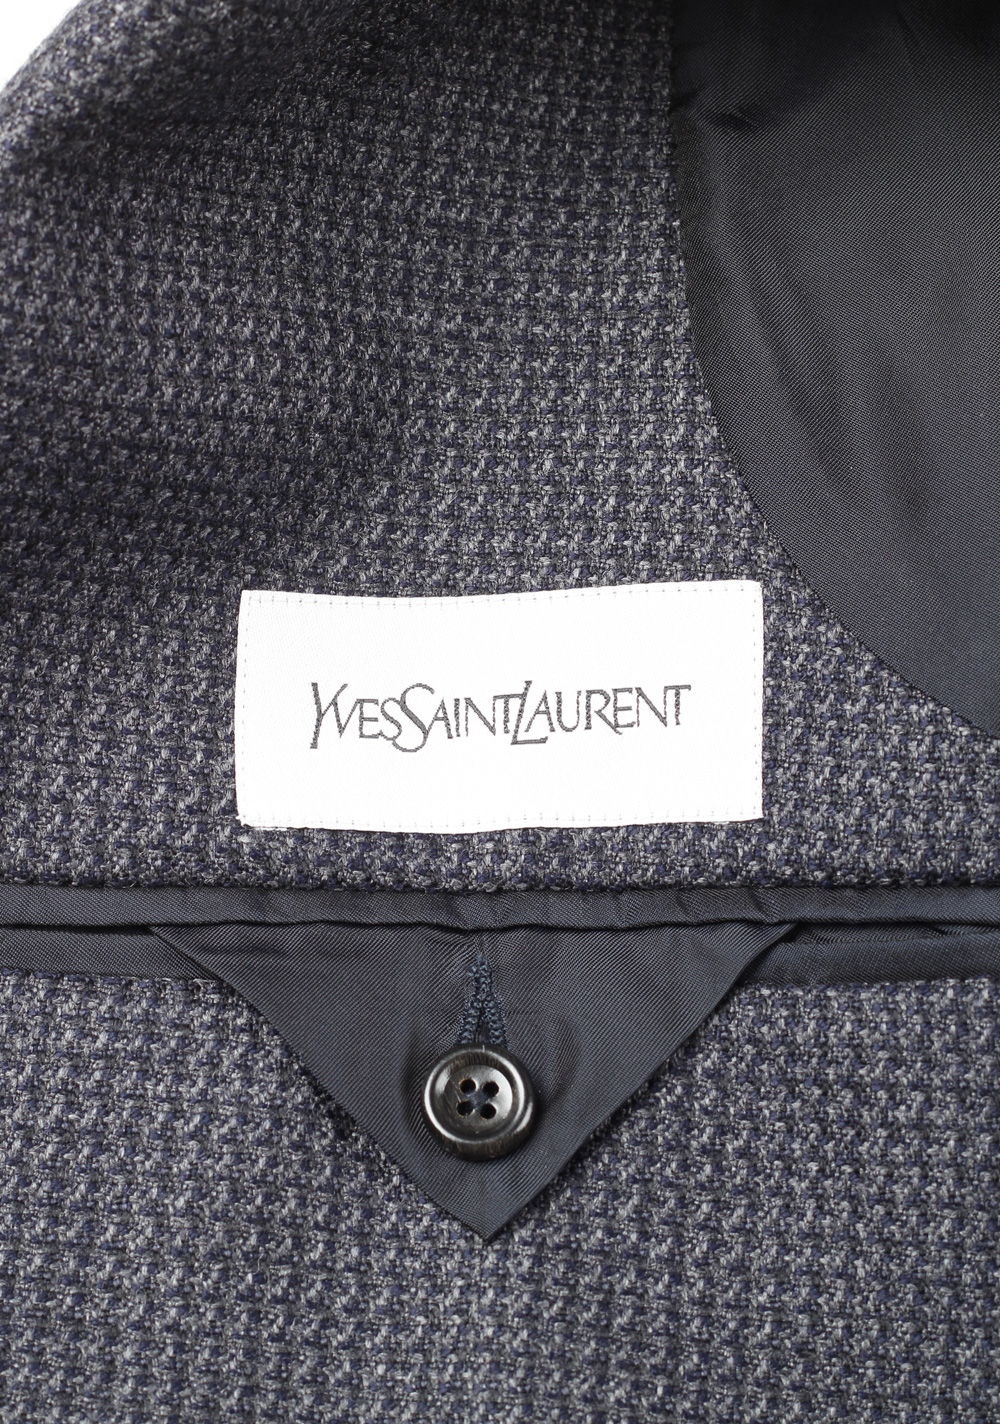 Yves Saint Laurent Ysl Sport Coat Size 46 / 36R U.S. | Costume Limité